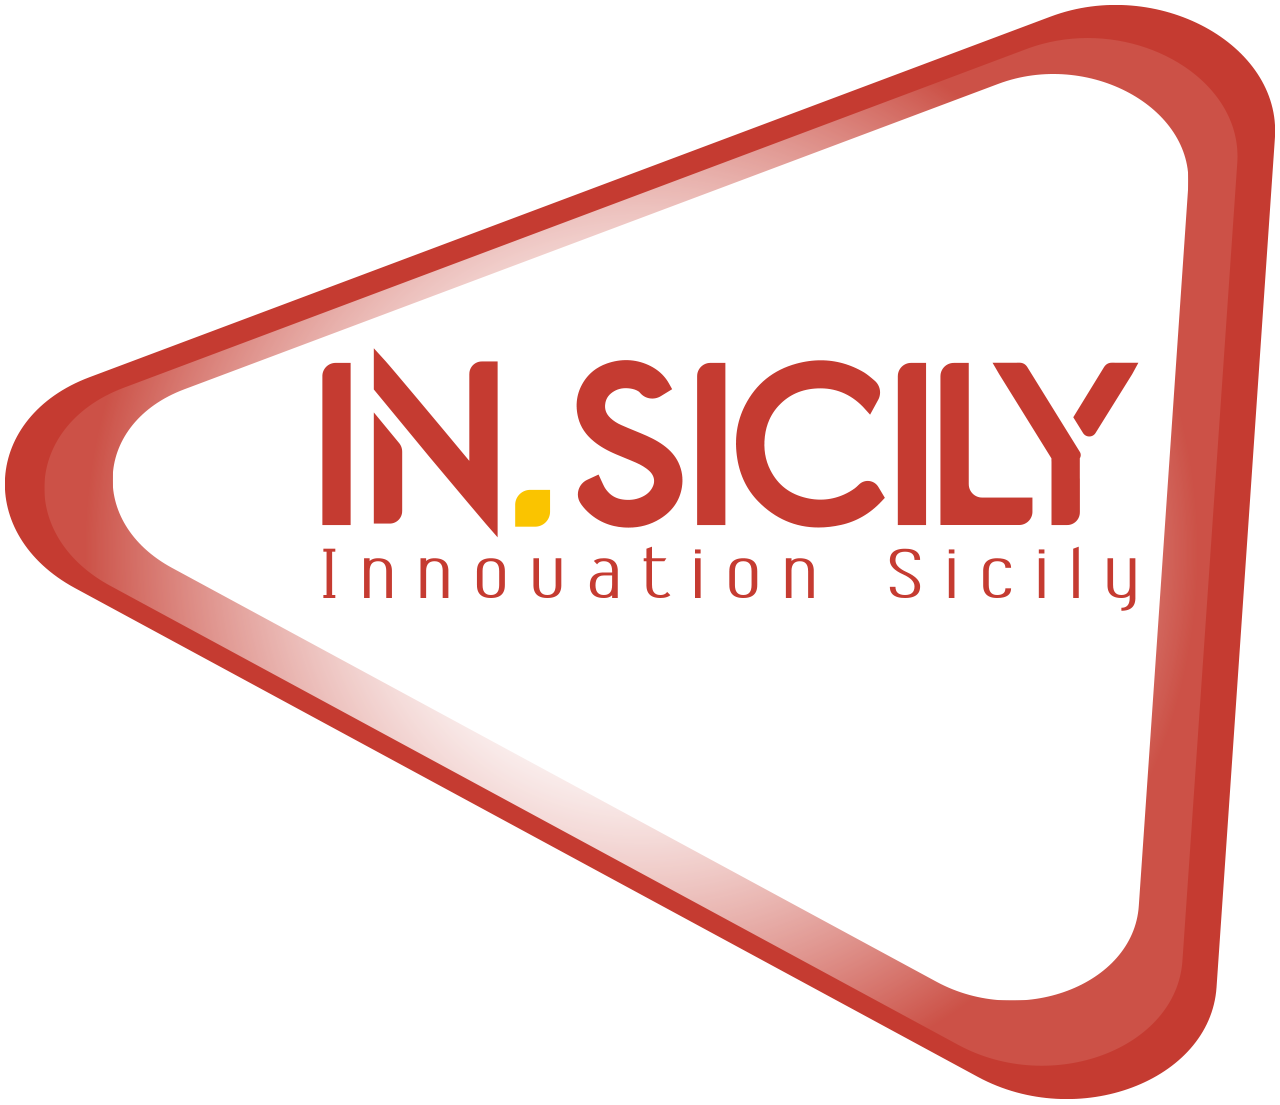 IN.SICILY - Innovation Sicily